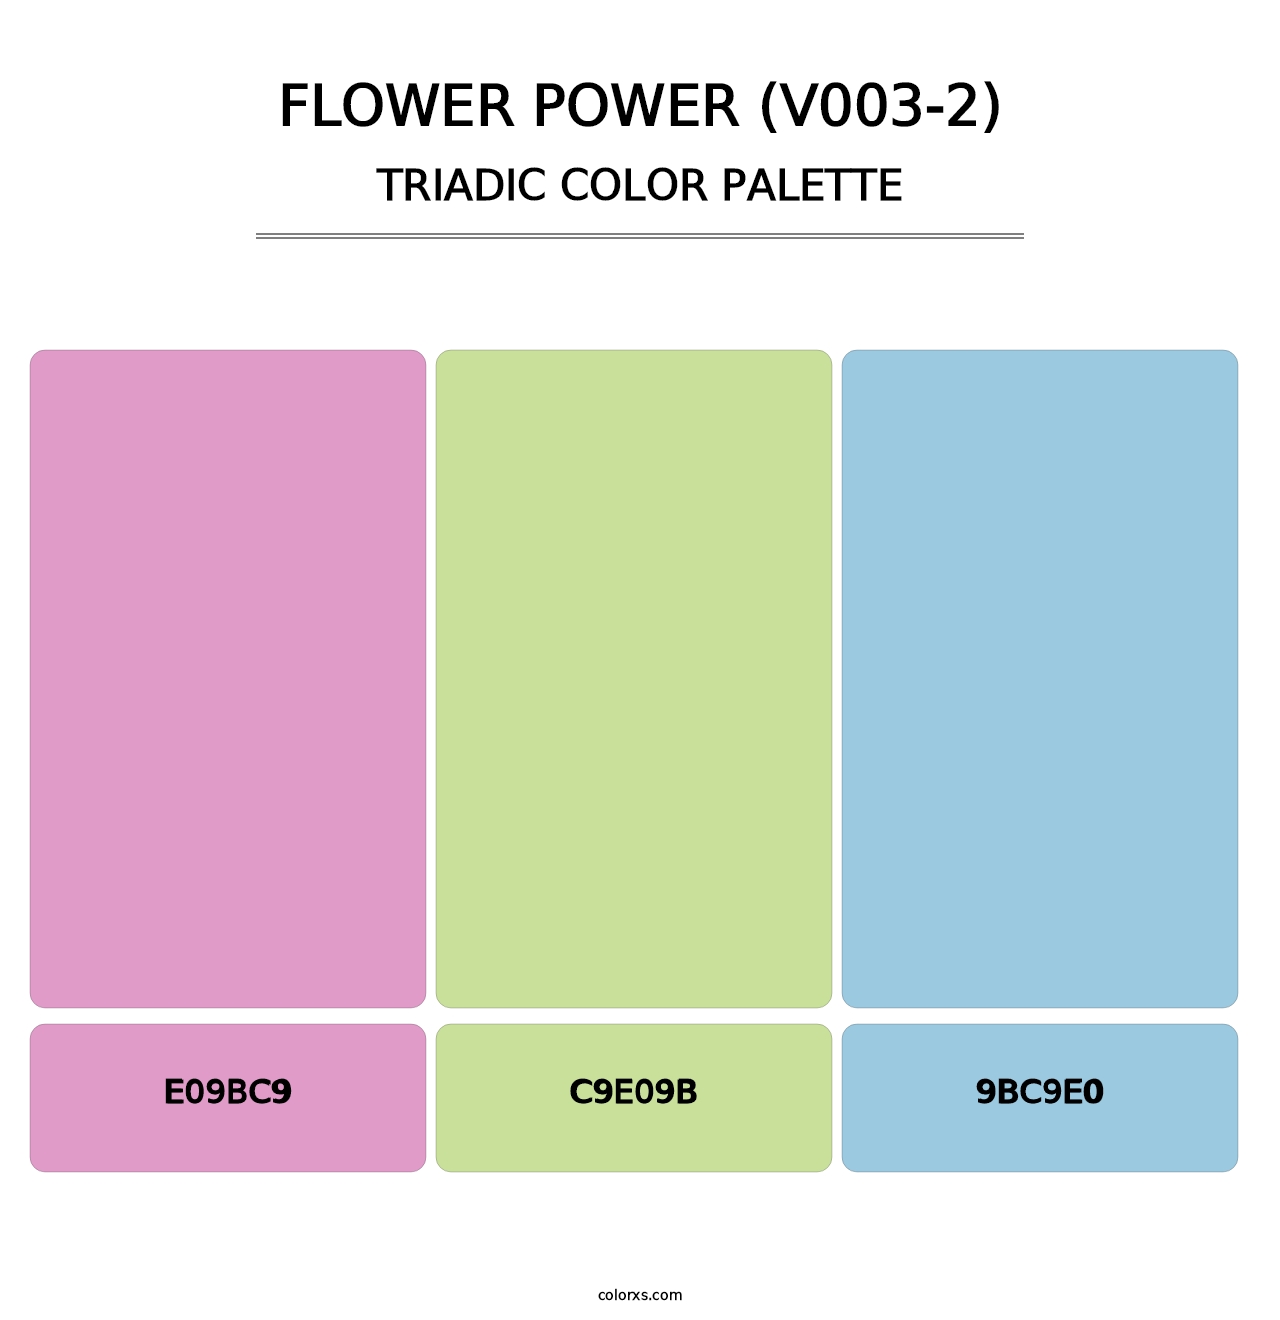 Flower Power (V003-2) - Triadic Color Palette